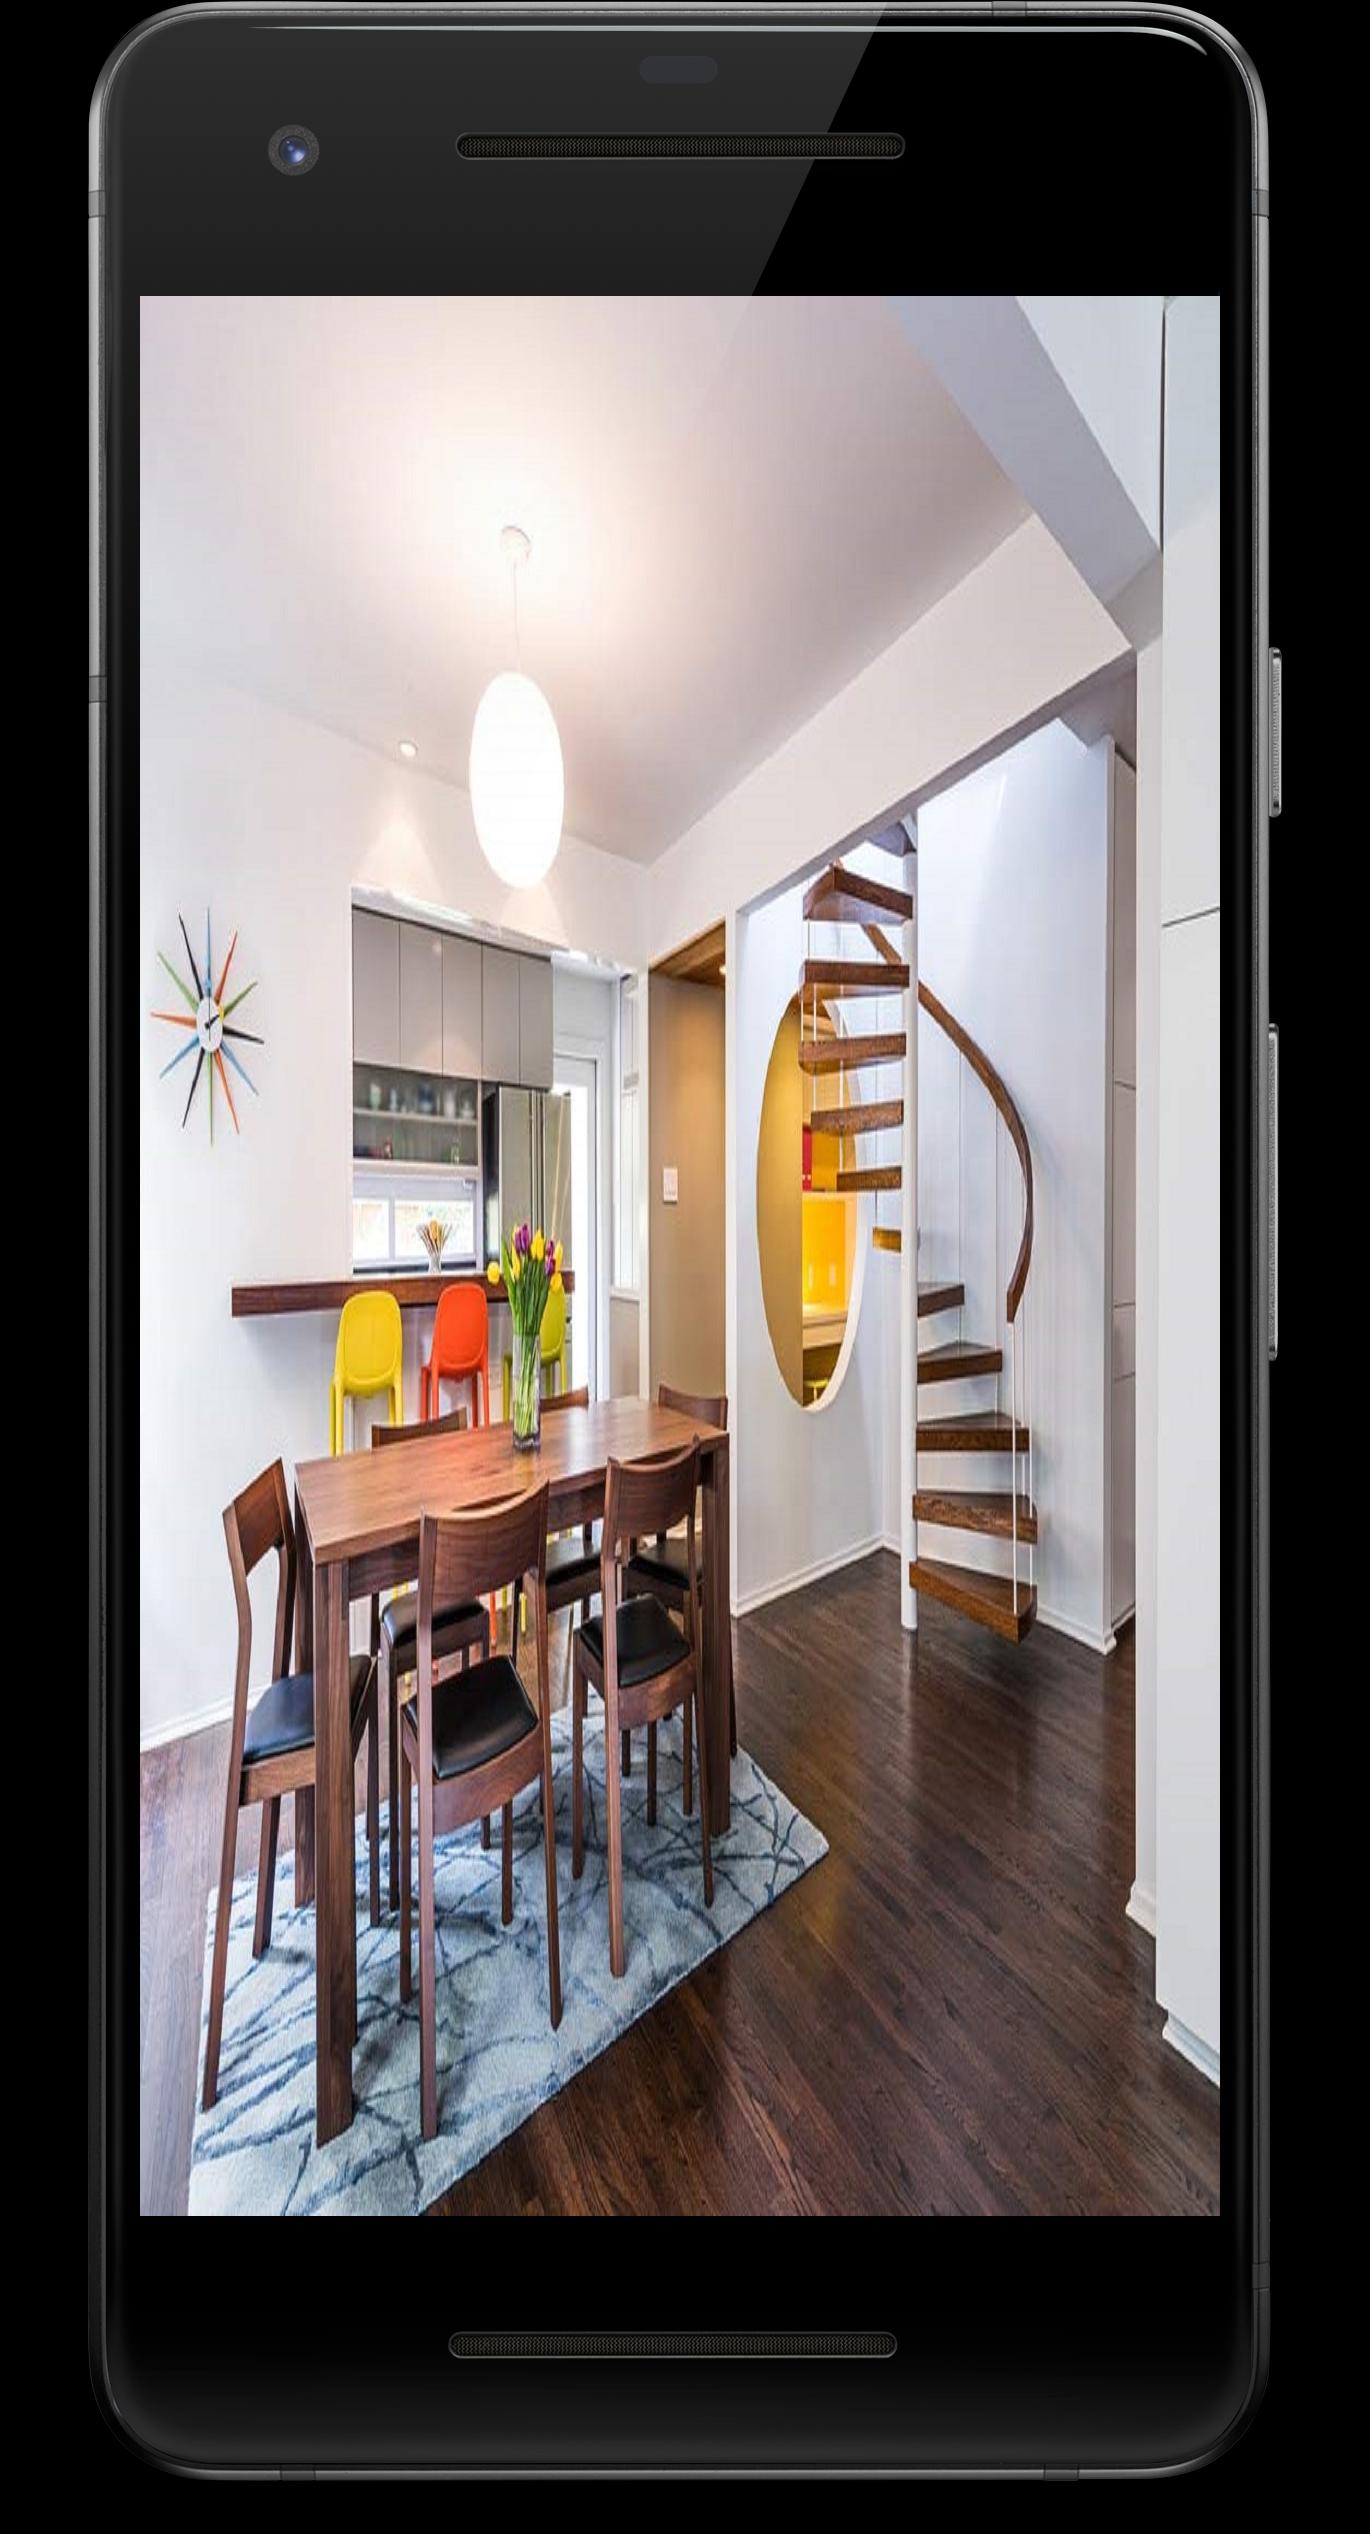 Ide Desain Interior Rumah Untuk Ruang Kecil 2019 Para Android